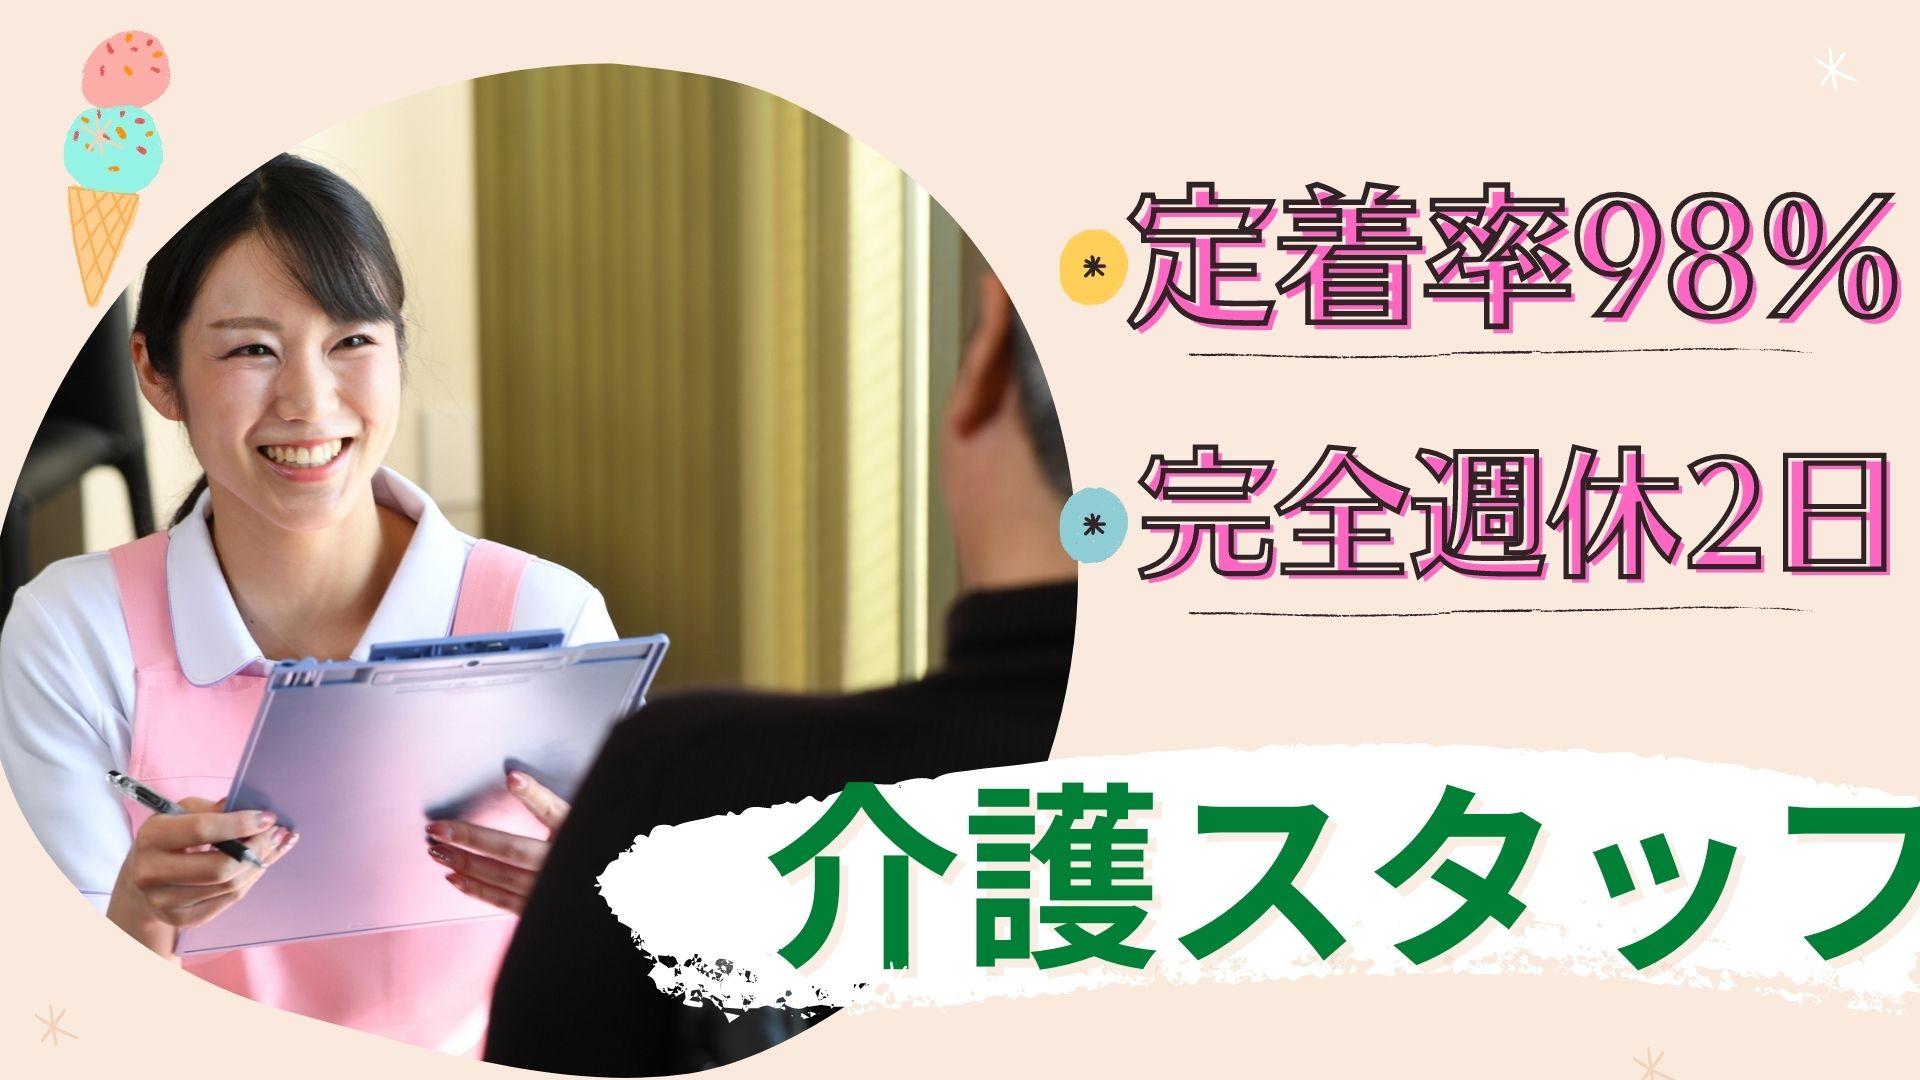 15 愛知 県 40 代 女性 正社員 求人 2020